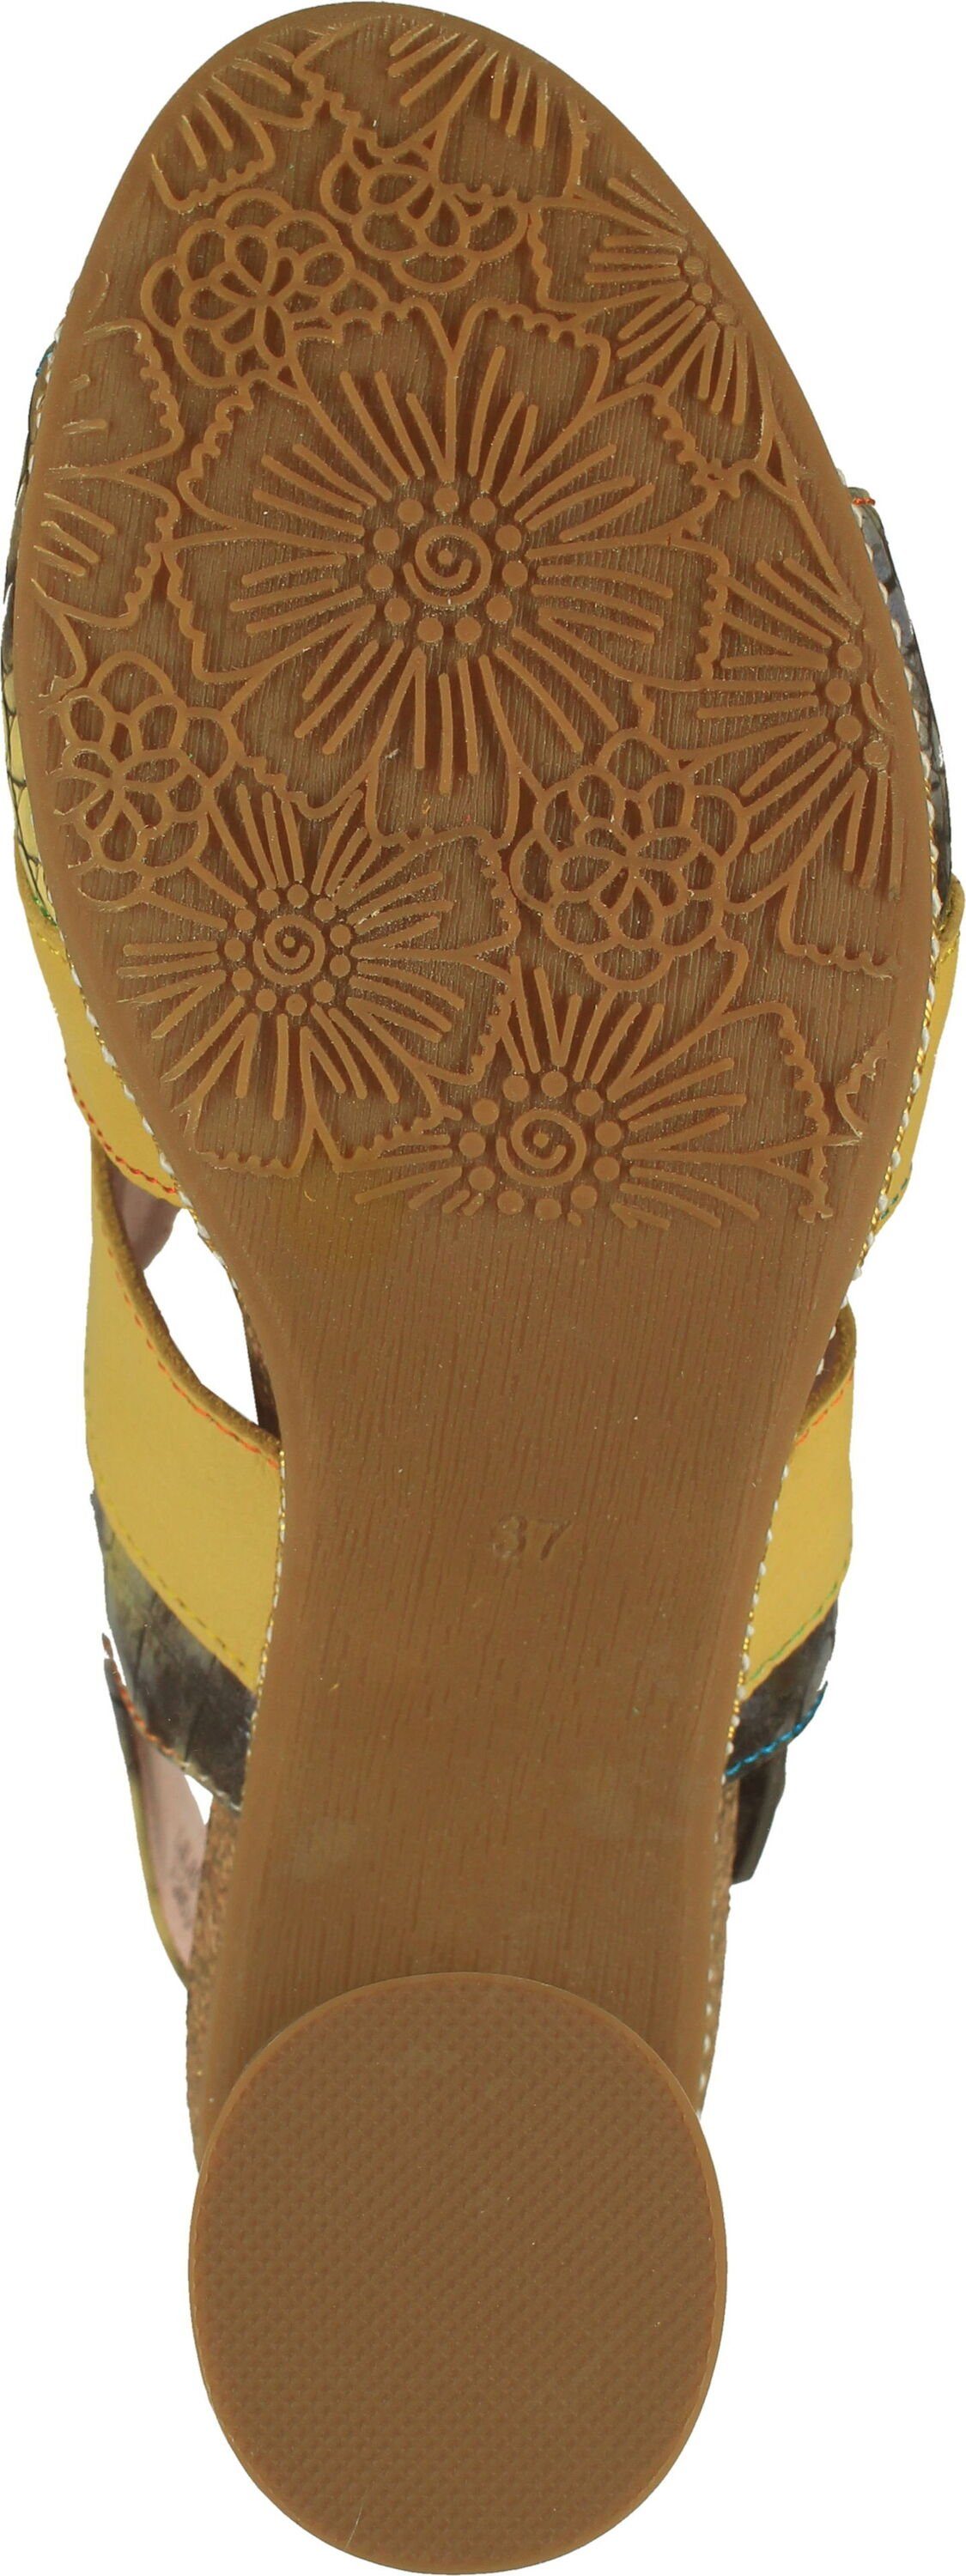 Schuhe Sandaletten LAURA VITA Sandalen Leder/Textil Riemchensandalette